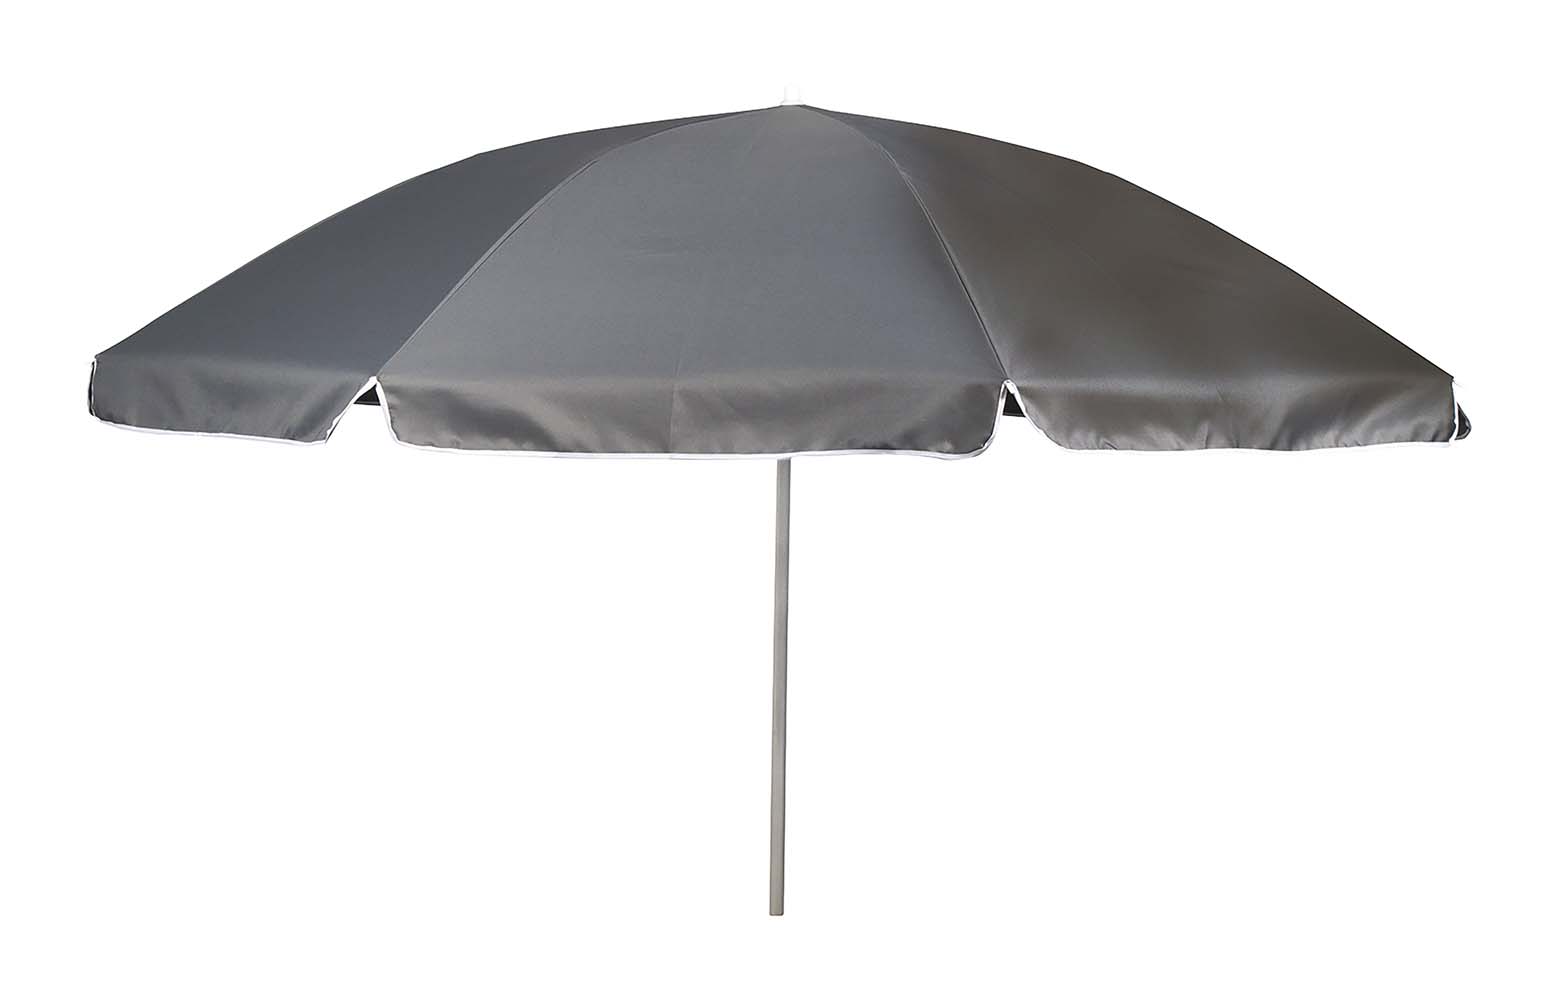 7267247 Een stevige parasol met stalen frame. Het 160 gr/m² polyester doek biedt bescherming tegen schadelijke zonnestraling. De steel is in hoogte verstelbaar en voorzien van een knikarm zodat het doek richting de zon kan worden gebogen. De steel van de parasol heeft een diameter van 25 millimeter.